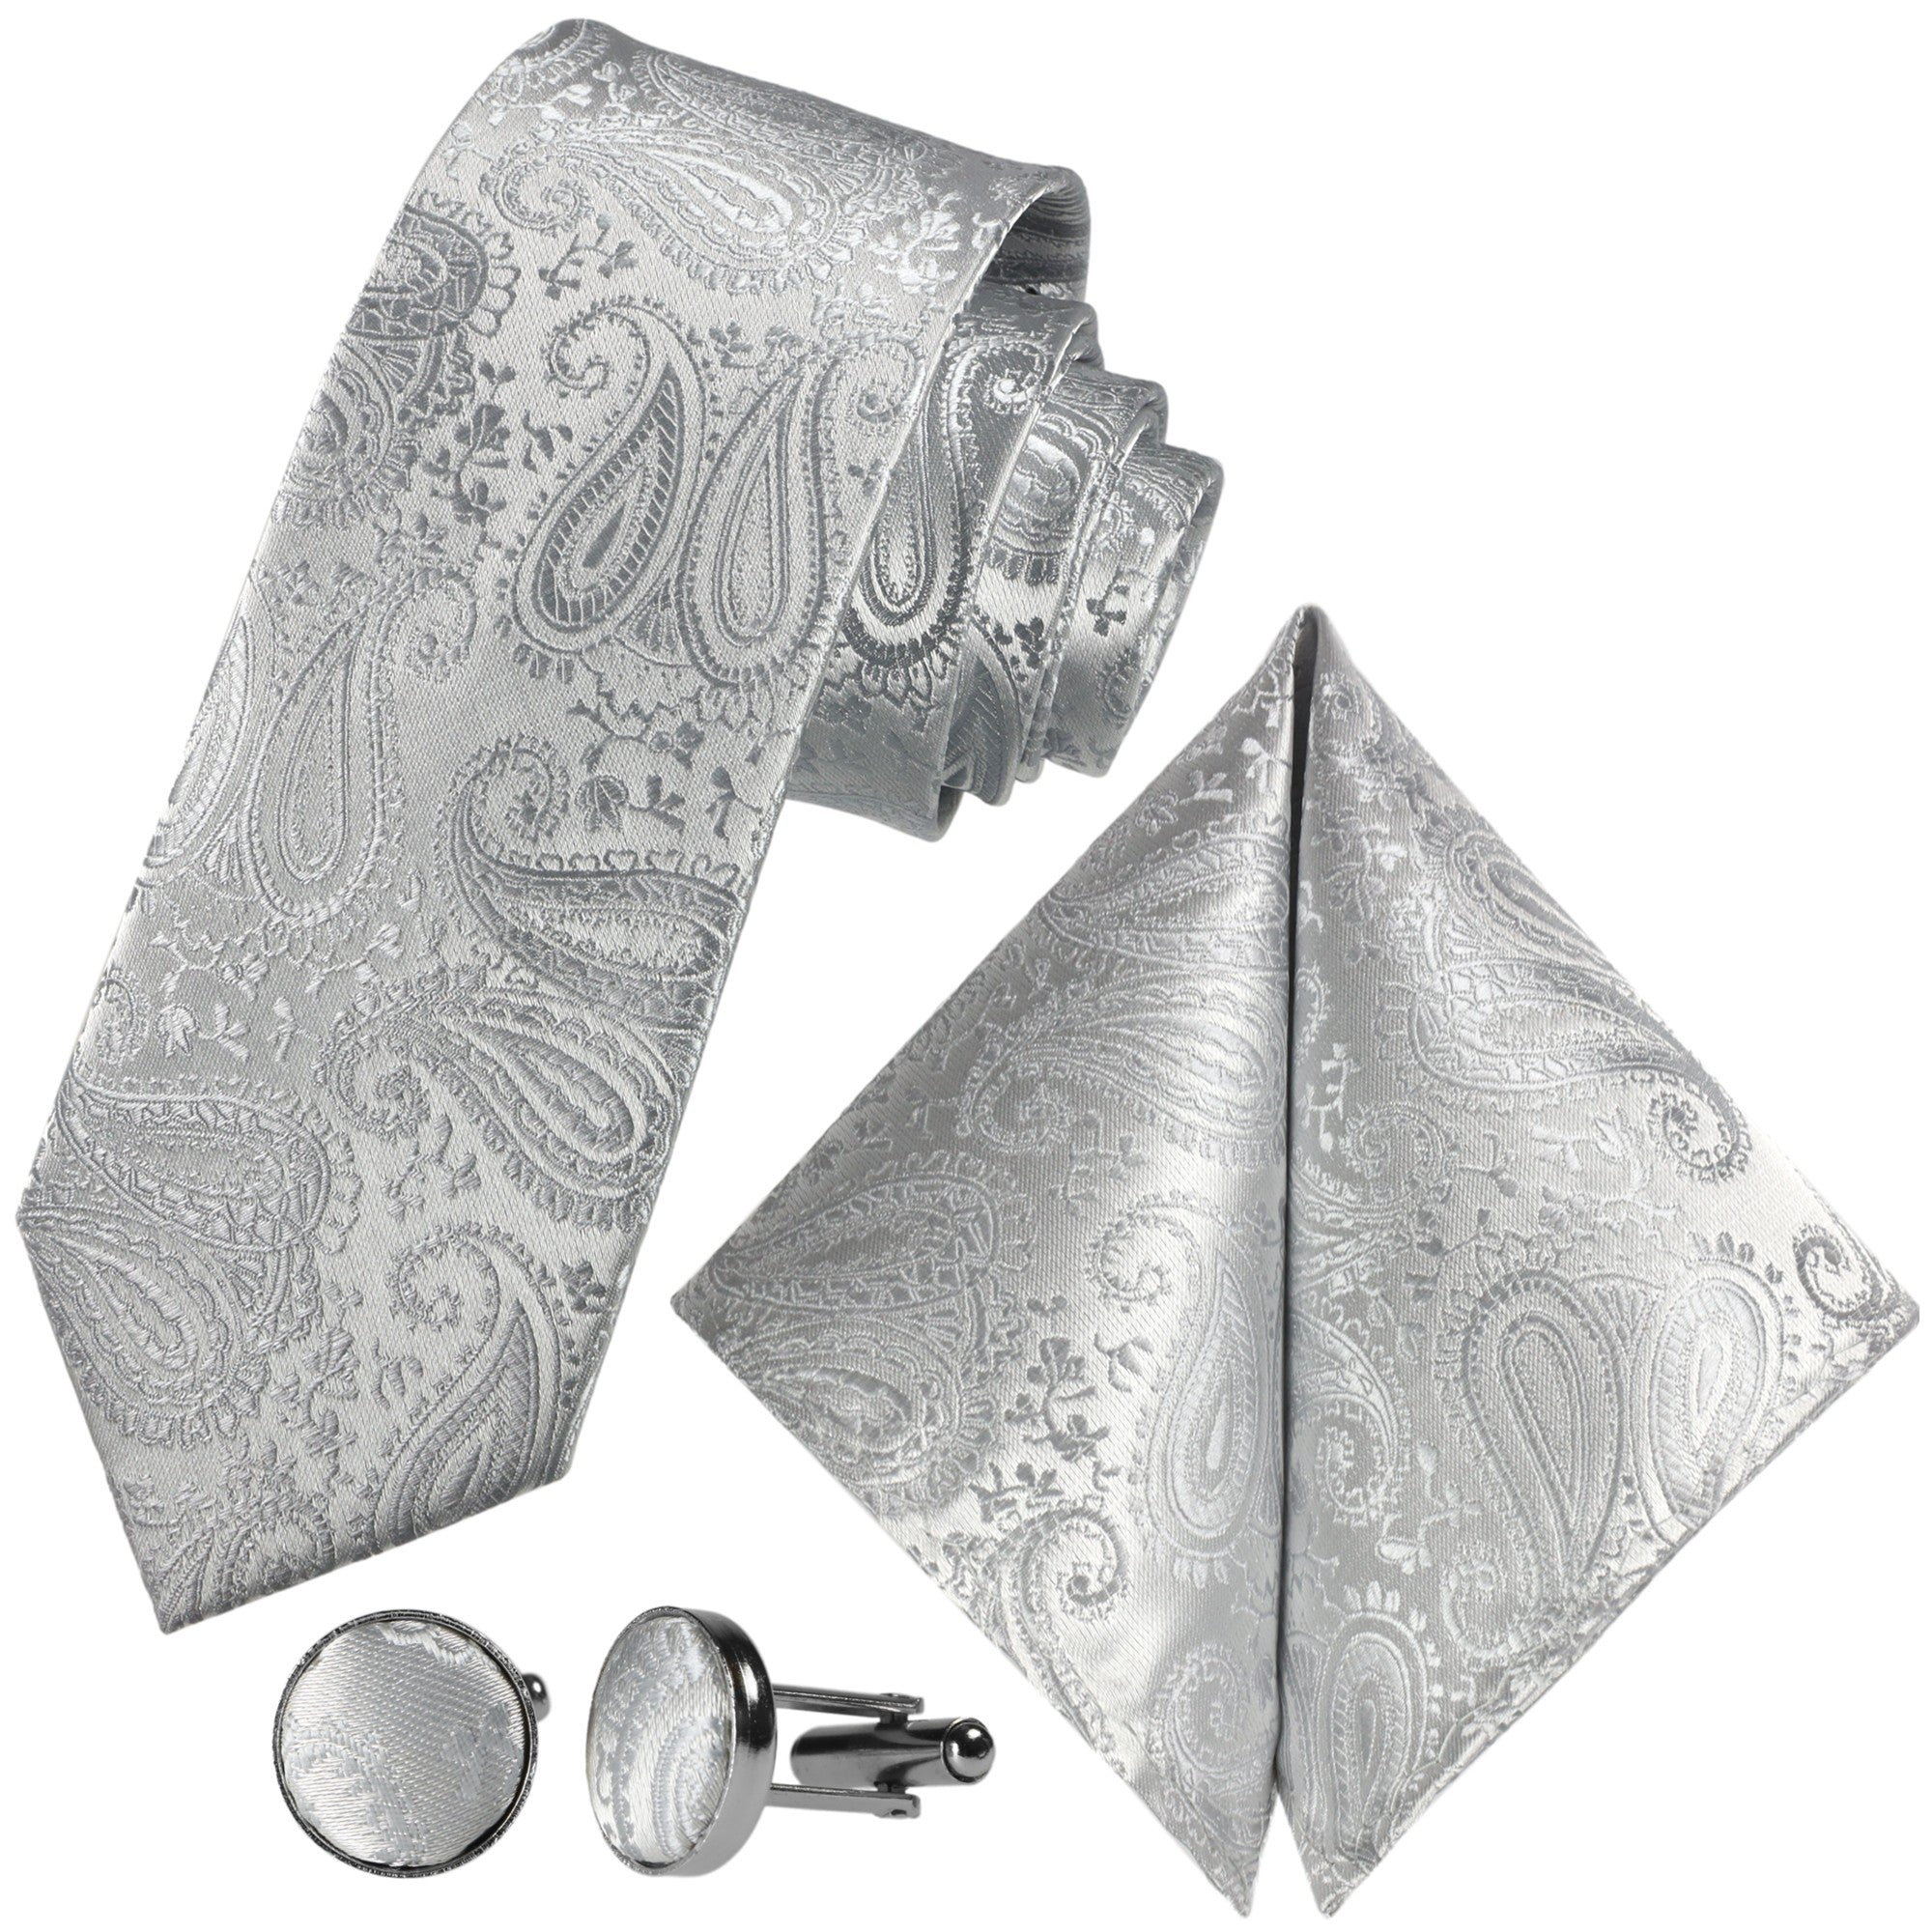 Kaufen Sie GASSANIshop.de - Krawatten für GASSANI Paisley-Krawatte Silber-Graue Designt 